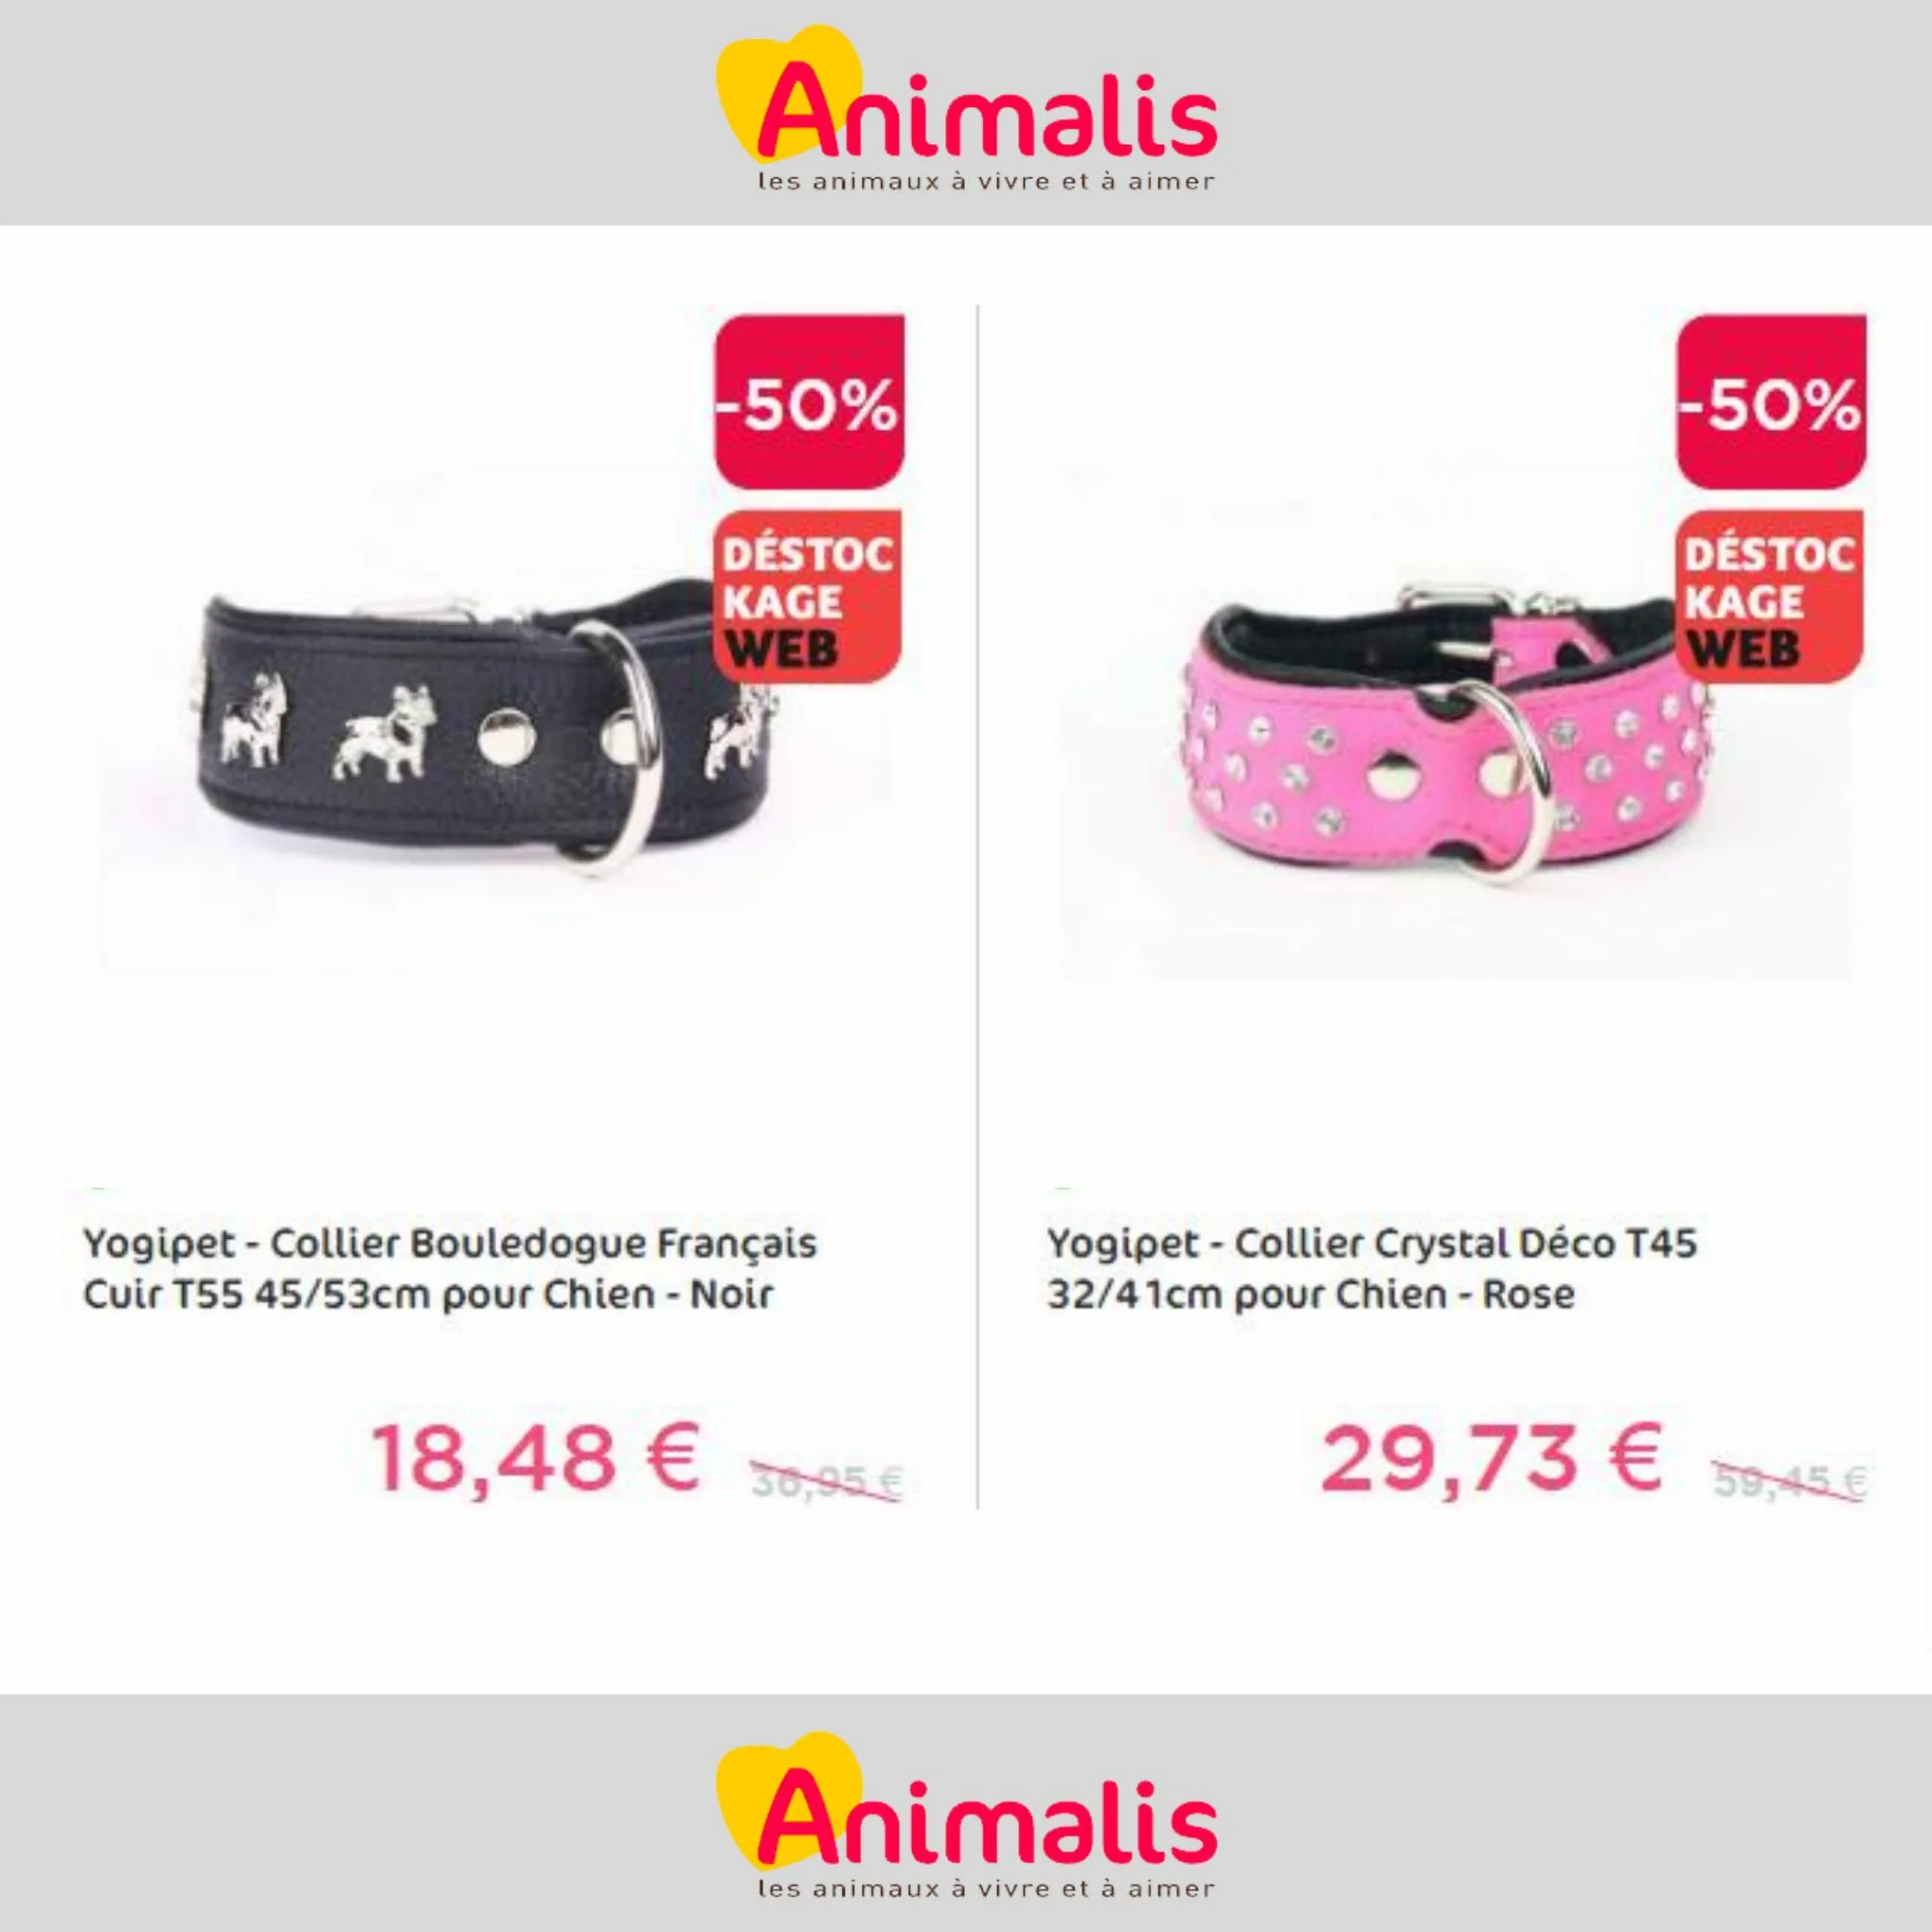 Catalogue Super offres de -50% pour votre animal de compagnie, page 00009